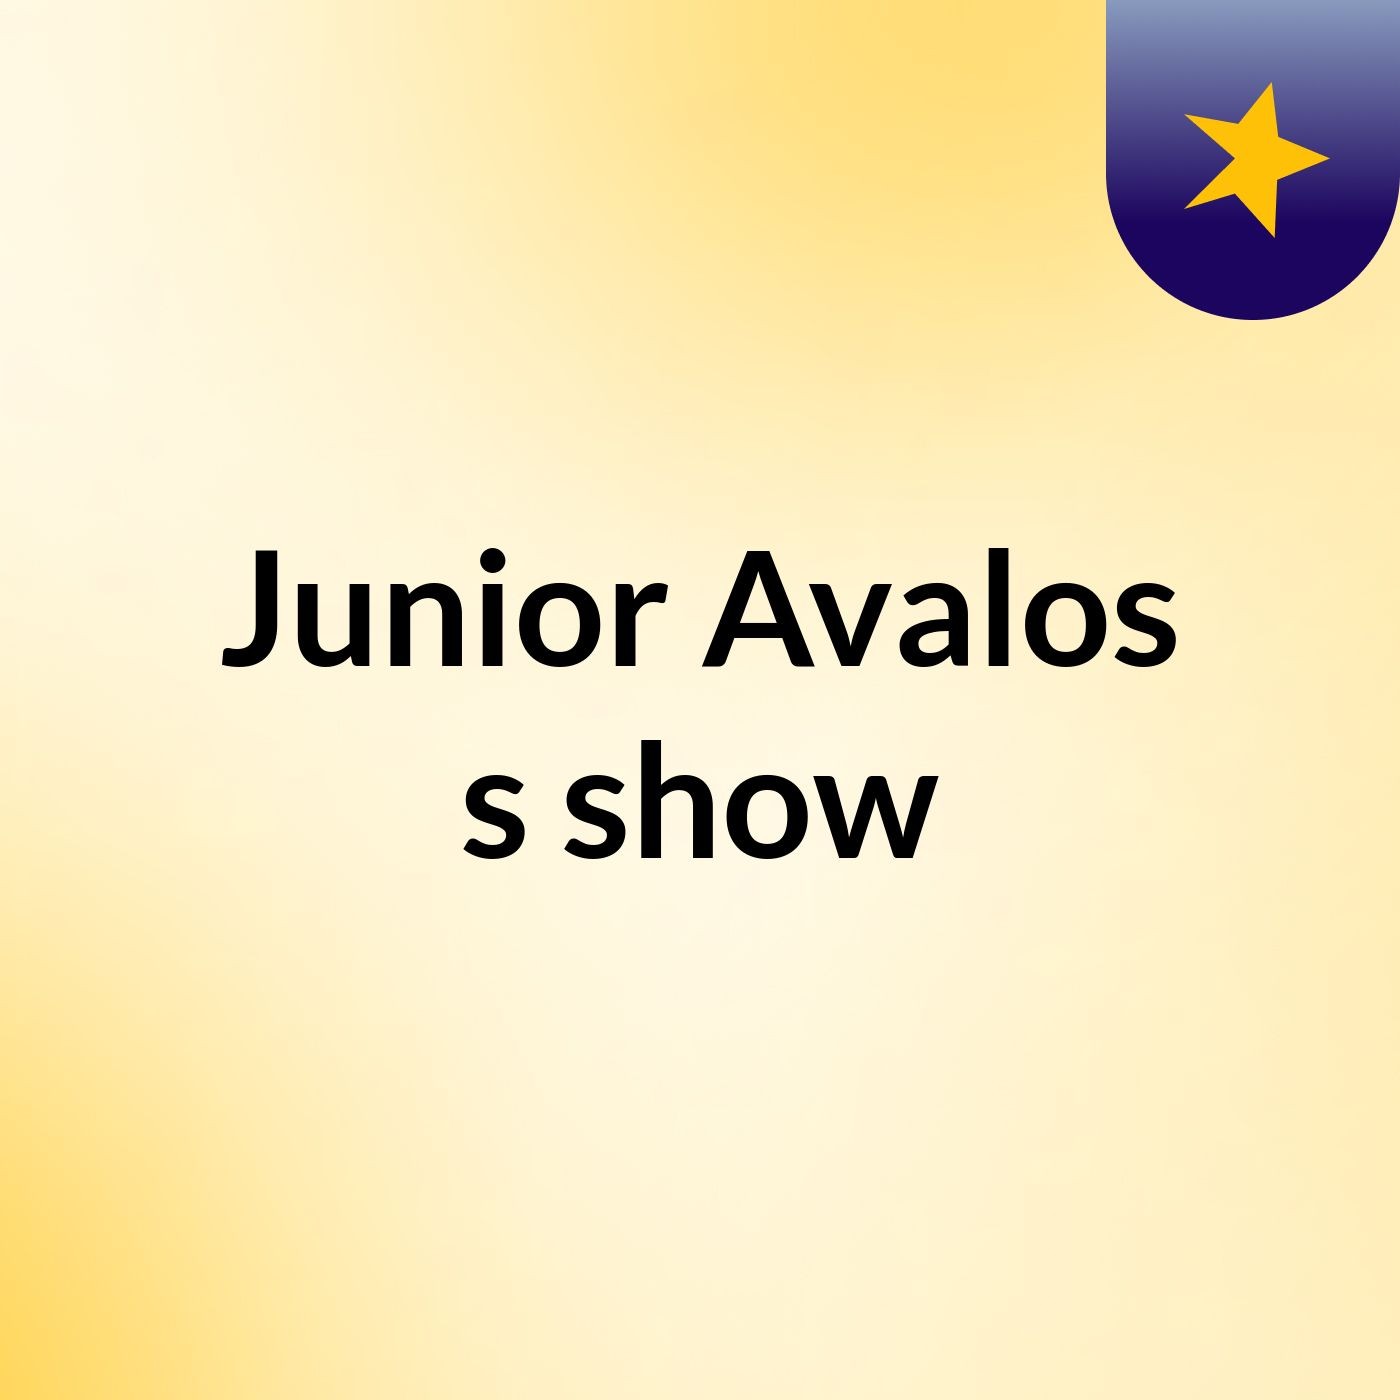 Junior Avalos's show